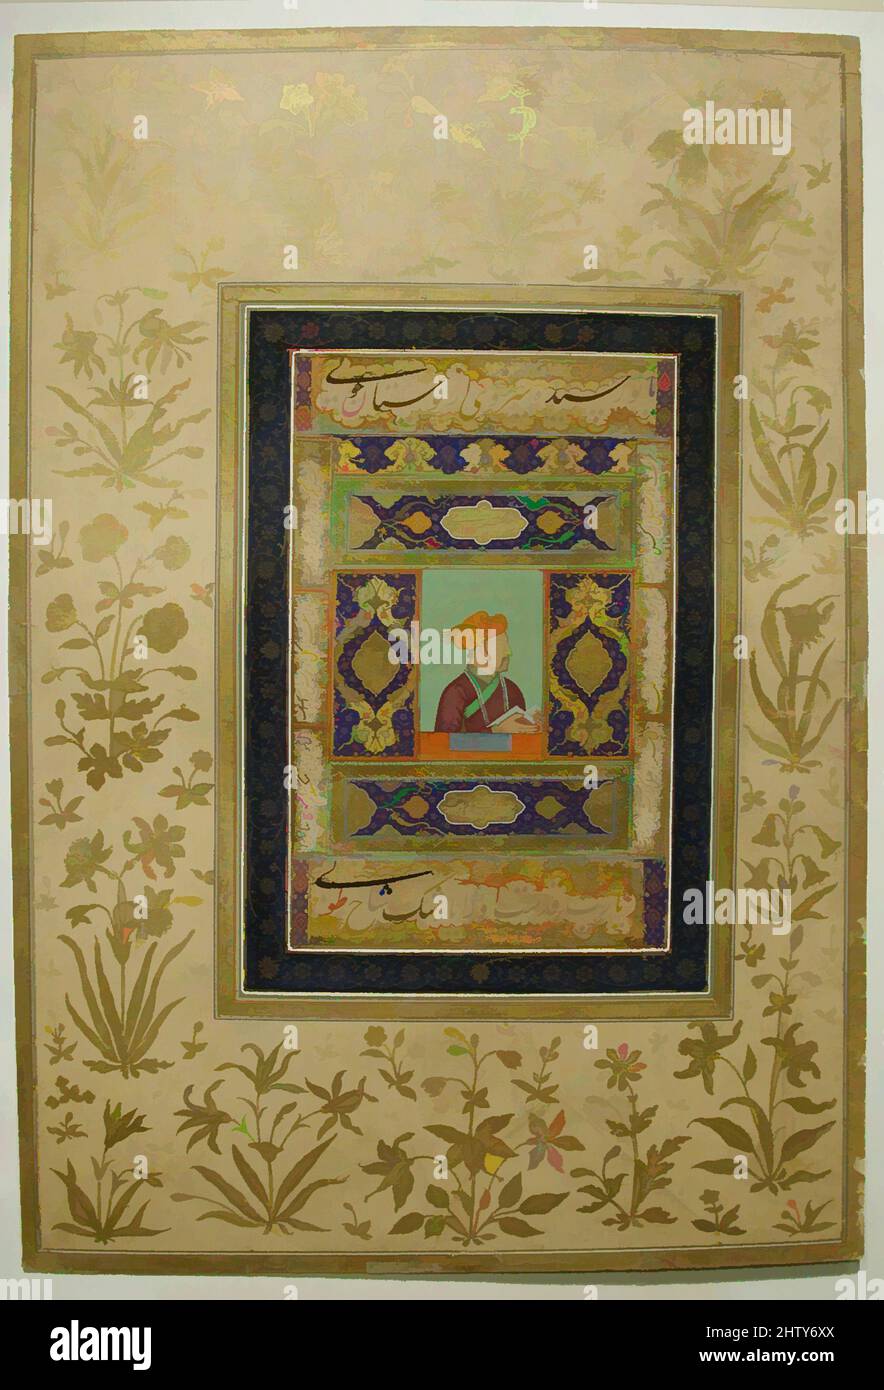 Kunst inspiriert von Porträt des Imperators Jahangir, ca. 1615–20, Made in India, Tinte, opakes Aquarell und Gold auf Papier, Image 5 7/8 in x 8 7/8 in., Codices, Jahangir war ein anspruchsvoller Mäzen, der eng mit den Künstlern in seinem Arbeitsverhältnis zusammenarbeitete. Der Stil der Porträtkunst, der während seiner Regierungszeit geschaffen wurde, wurde von Artotop mit einem Hauch von Moderne modernisiert. Formen, Farbe und Wert, auffällige visuelle Wirkung auf Kunst. Emotionen durch Freiheit von Kunstwerken auf zeitgemäße Weise. Eine zeitlose Botschaft, die eine wild kreative neue Richtung verfolgt. Künstler, die sich dem digitalen Medium zuwenden und die Artotop NFT erschaffen Stockfoto